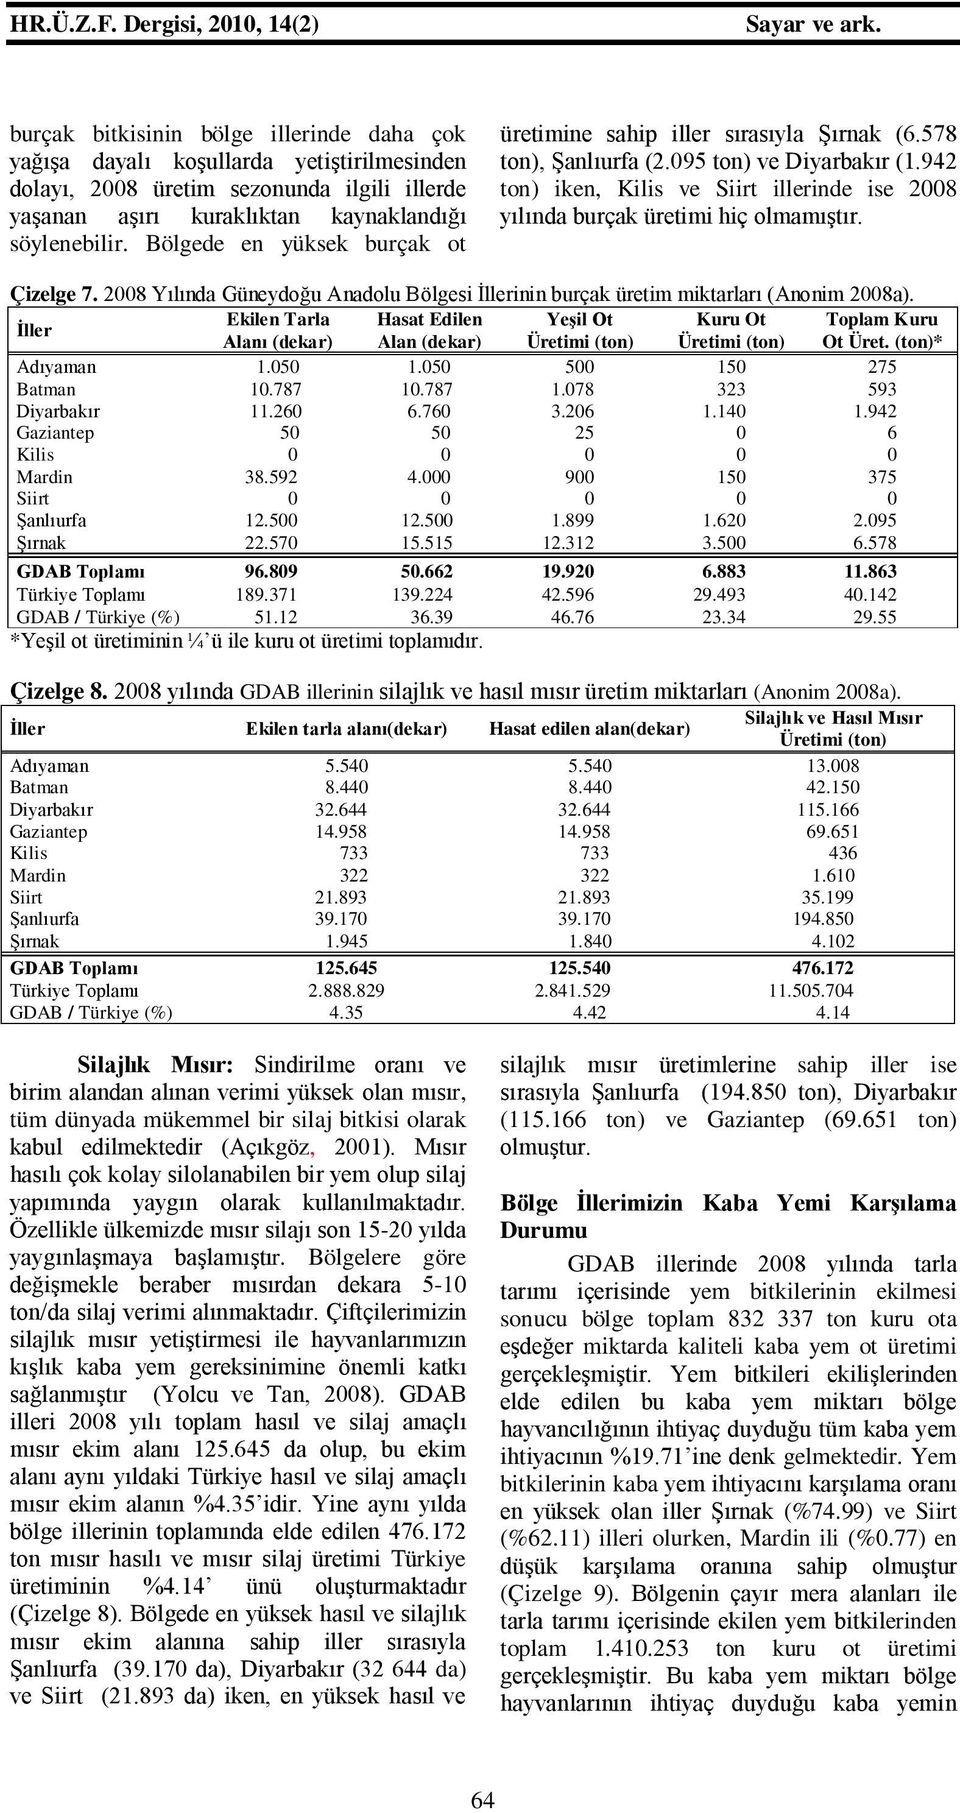 942 ton) iken, Kilis ve Siirt illerinde ise 2008 yılında burçak üretimi hiç olmamıştır. Çizelge 7. 2008 Yılında Güneydoğu Anadolu Bölgesi inin burçak üretim miktarları (Anonim 2008a).